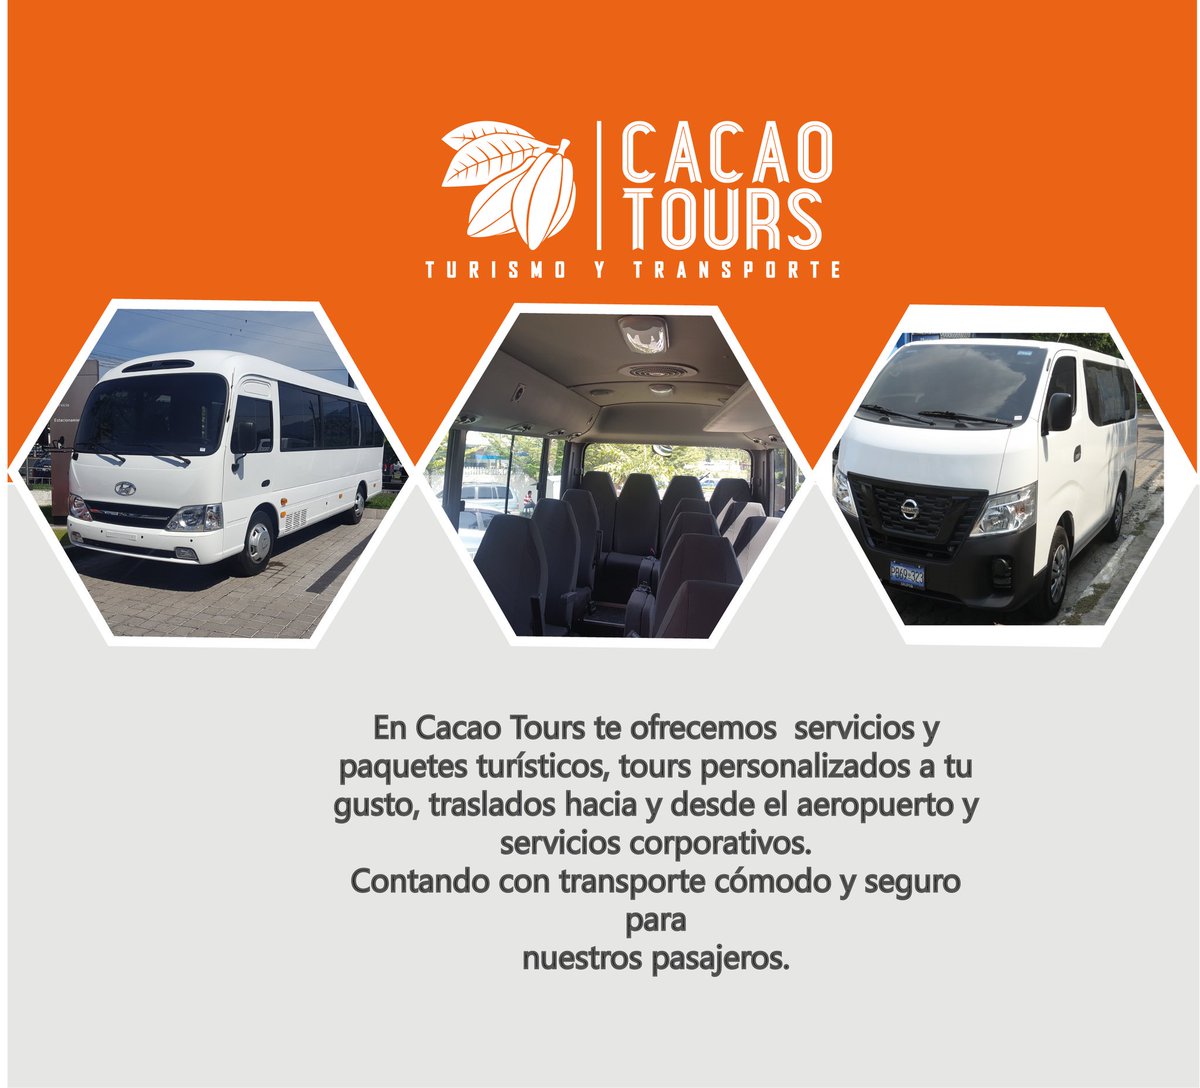 Acompáñanos a nuestras aventuras cada fin de semana. 
Además estamos a tu disposición con todos nuestros servicios. #cacaotoursvs #turismoelsalvador #turismoytransporte